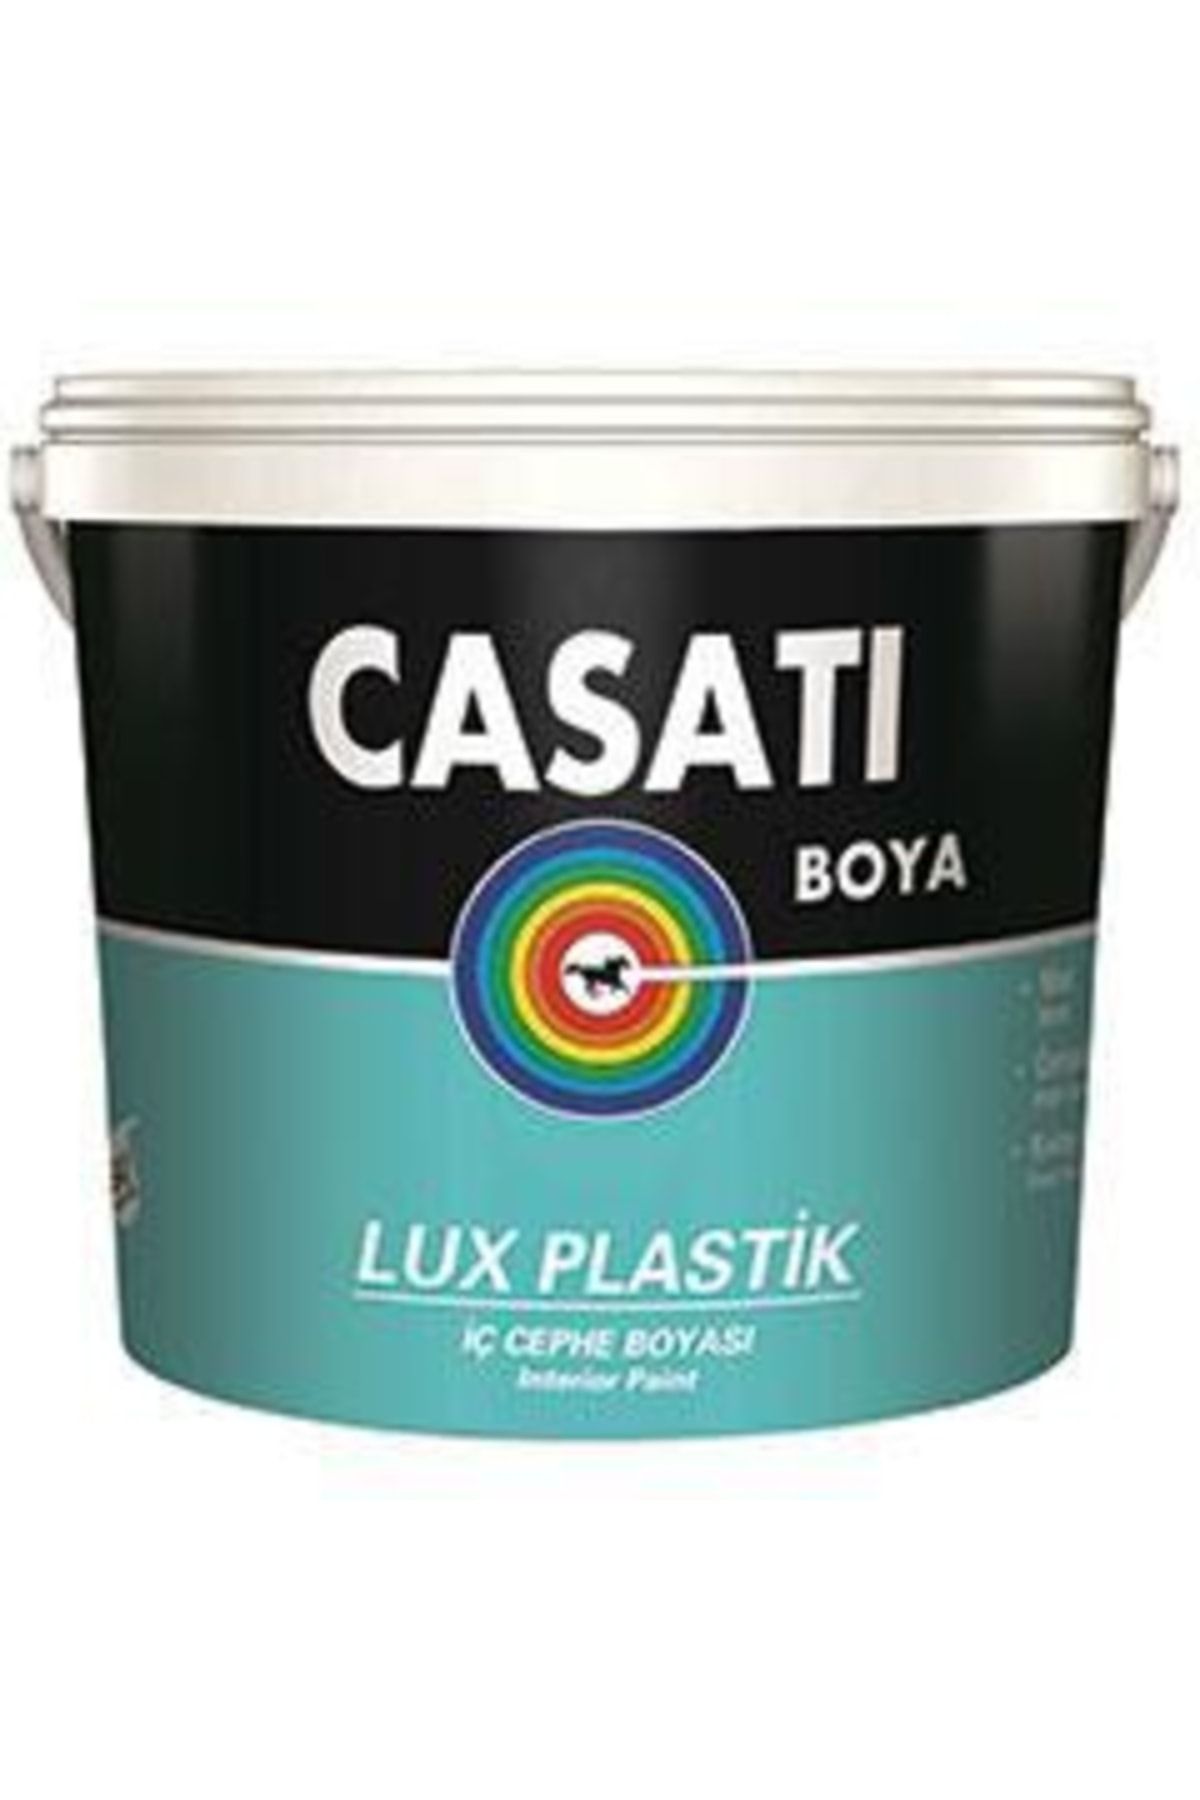 Casati Dyo Lux Plastik Iç Cephe Boyası 3,5 Kg